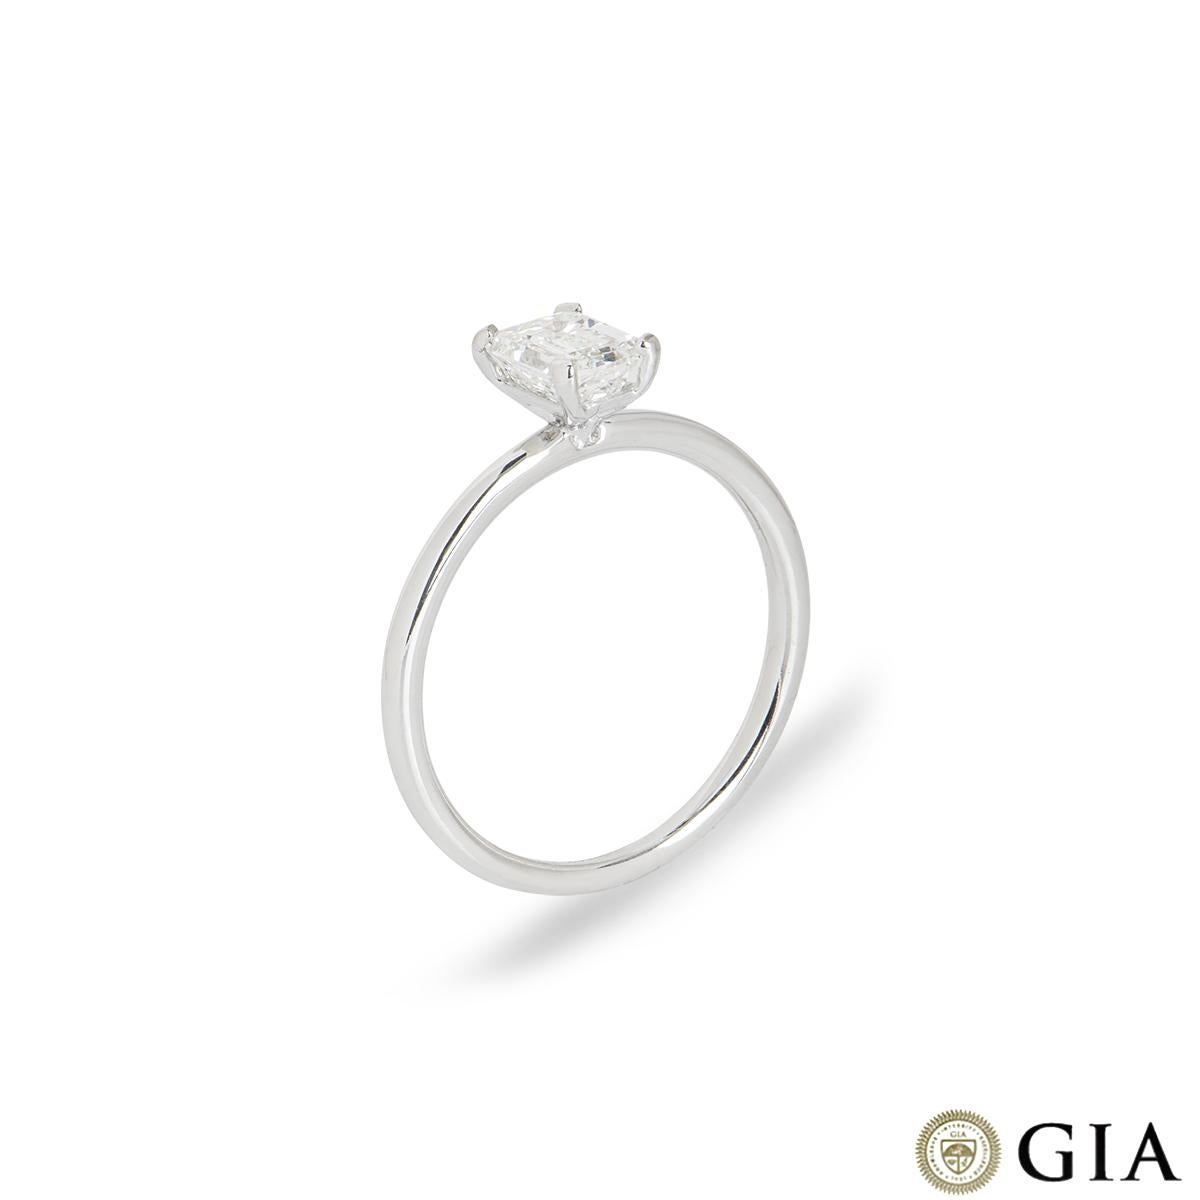 Une charmante bague de fiançailles en or blanc 18k avec un diamant de taille émeraude. La bague solitaire est sertie au centre d'un diamant de taille émeraude dans une monture à quatre griffes pesant 0,81ct, de couleur H et de pureté VVS2. La bague